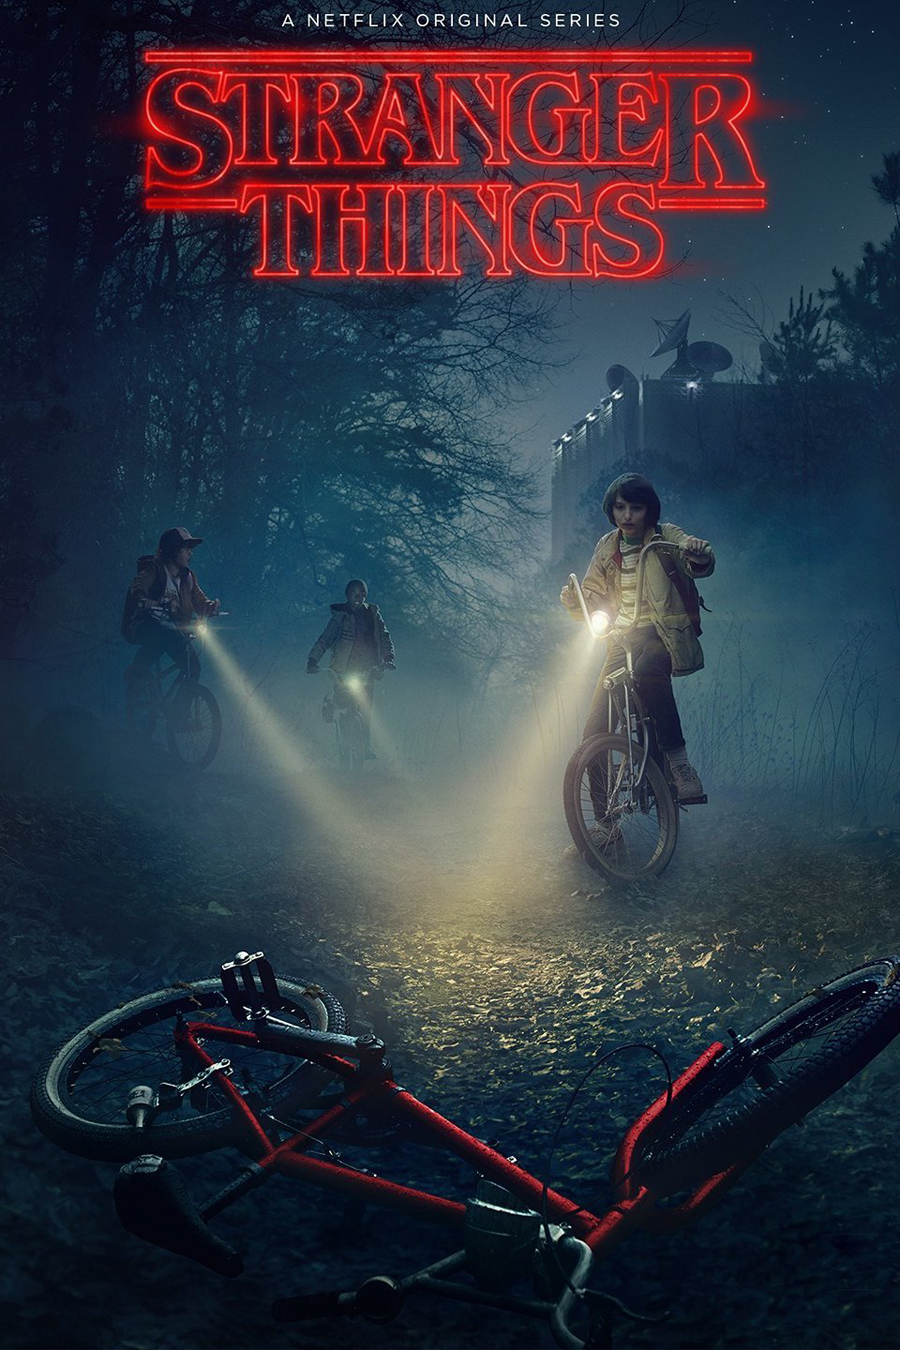 Stranger Things, lo mejor del cine de los ochentas en una serie del 2016 2